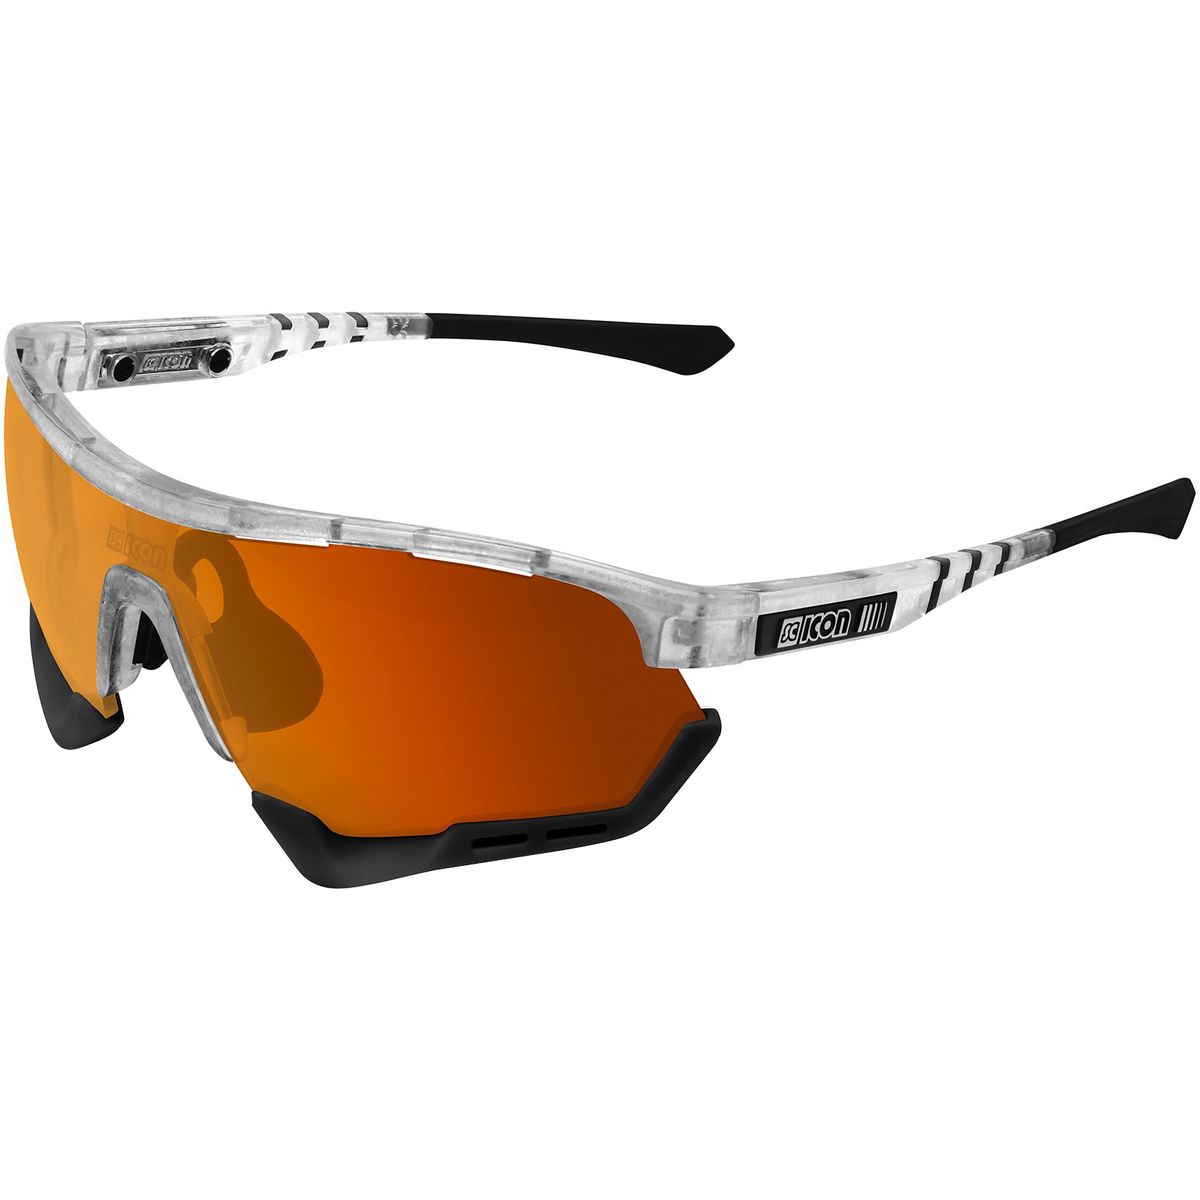 SciCon AeroTech XL Sunglasses - Accessories